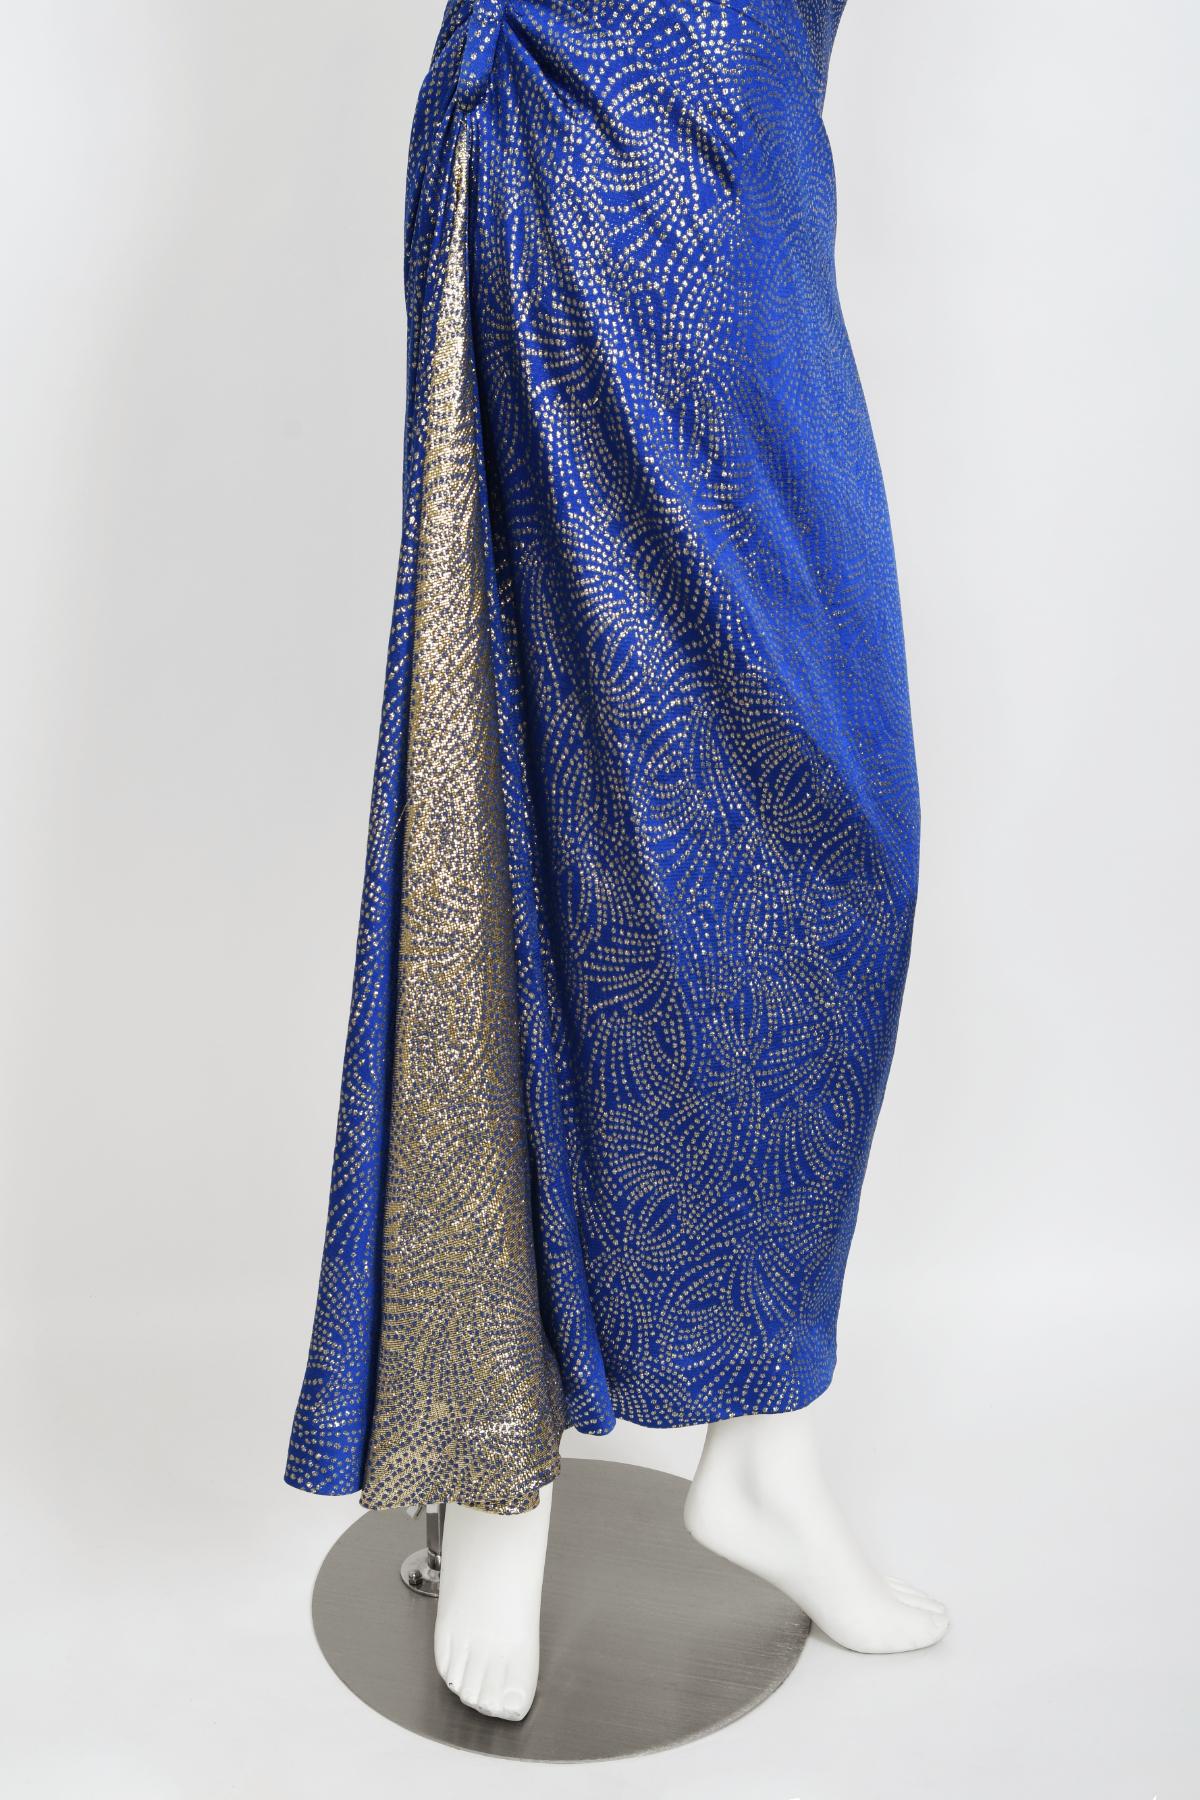 Robe asymétrique vintage en soie bleue métallisée coupée en biais Jacqueline de Ribes, années 1990 en vente 4